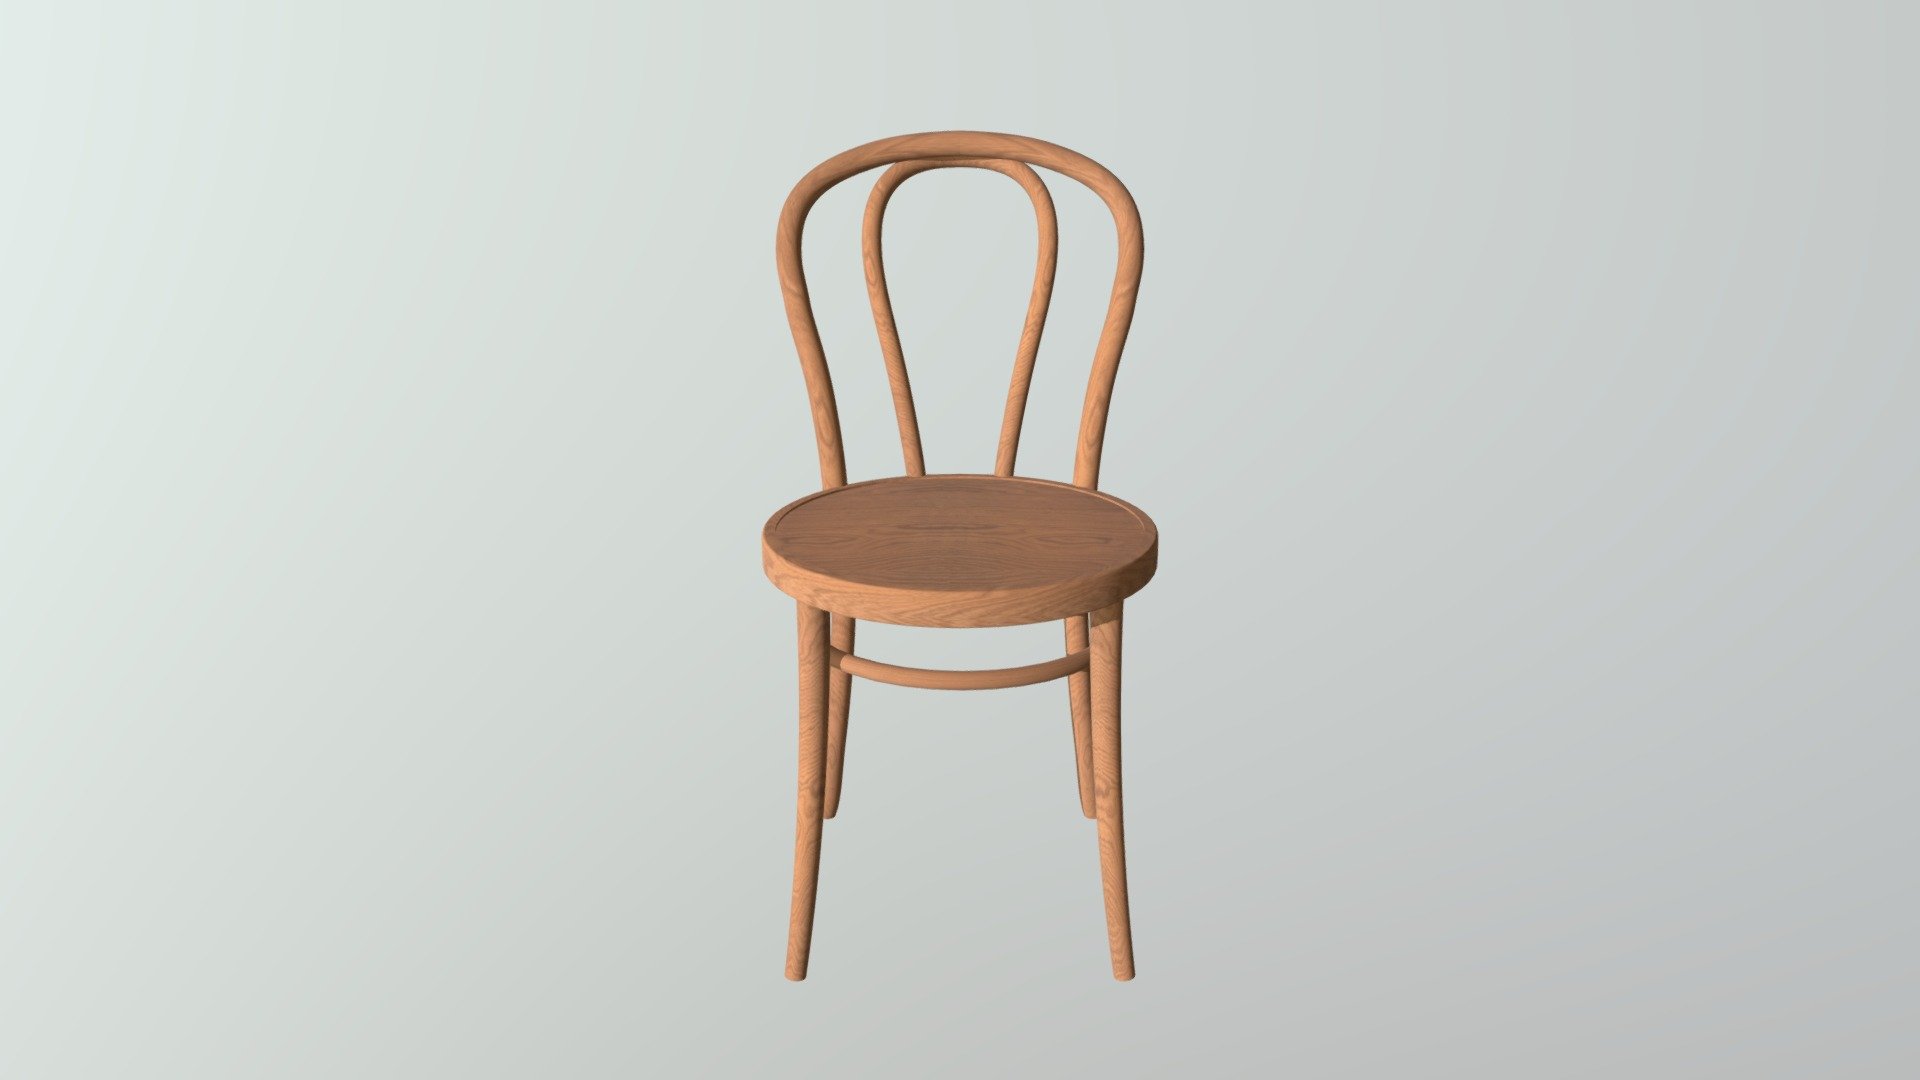 Wooden chair - chair - 3D model by JanMiske 3d model